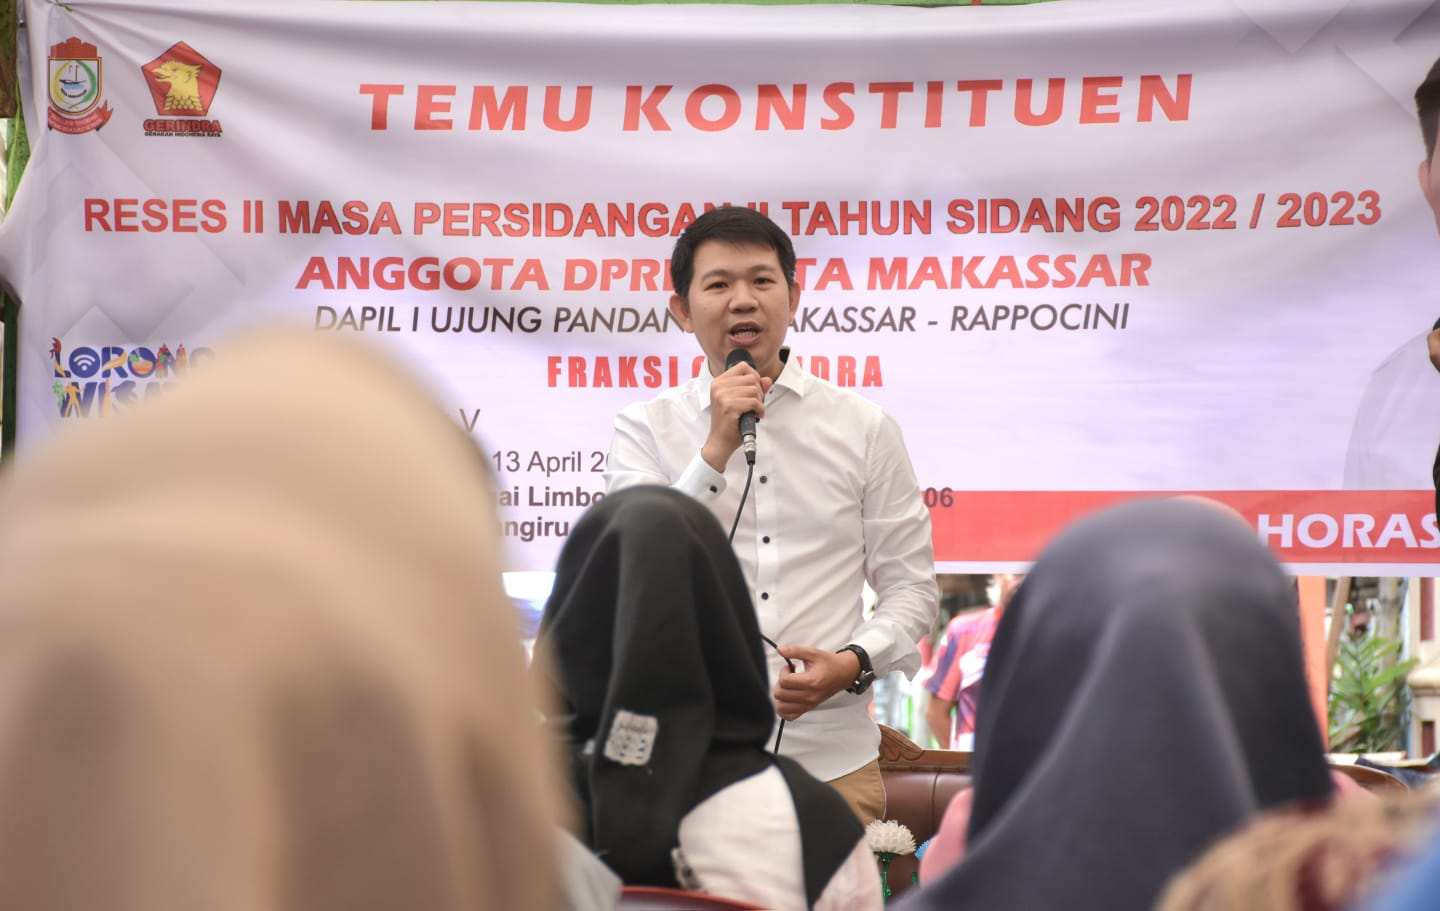 Reses kedua masa persidangan II tahun sidang 2022/2023, Ketua Komisi B DPRD Kota Makassar